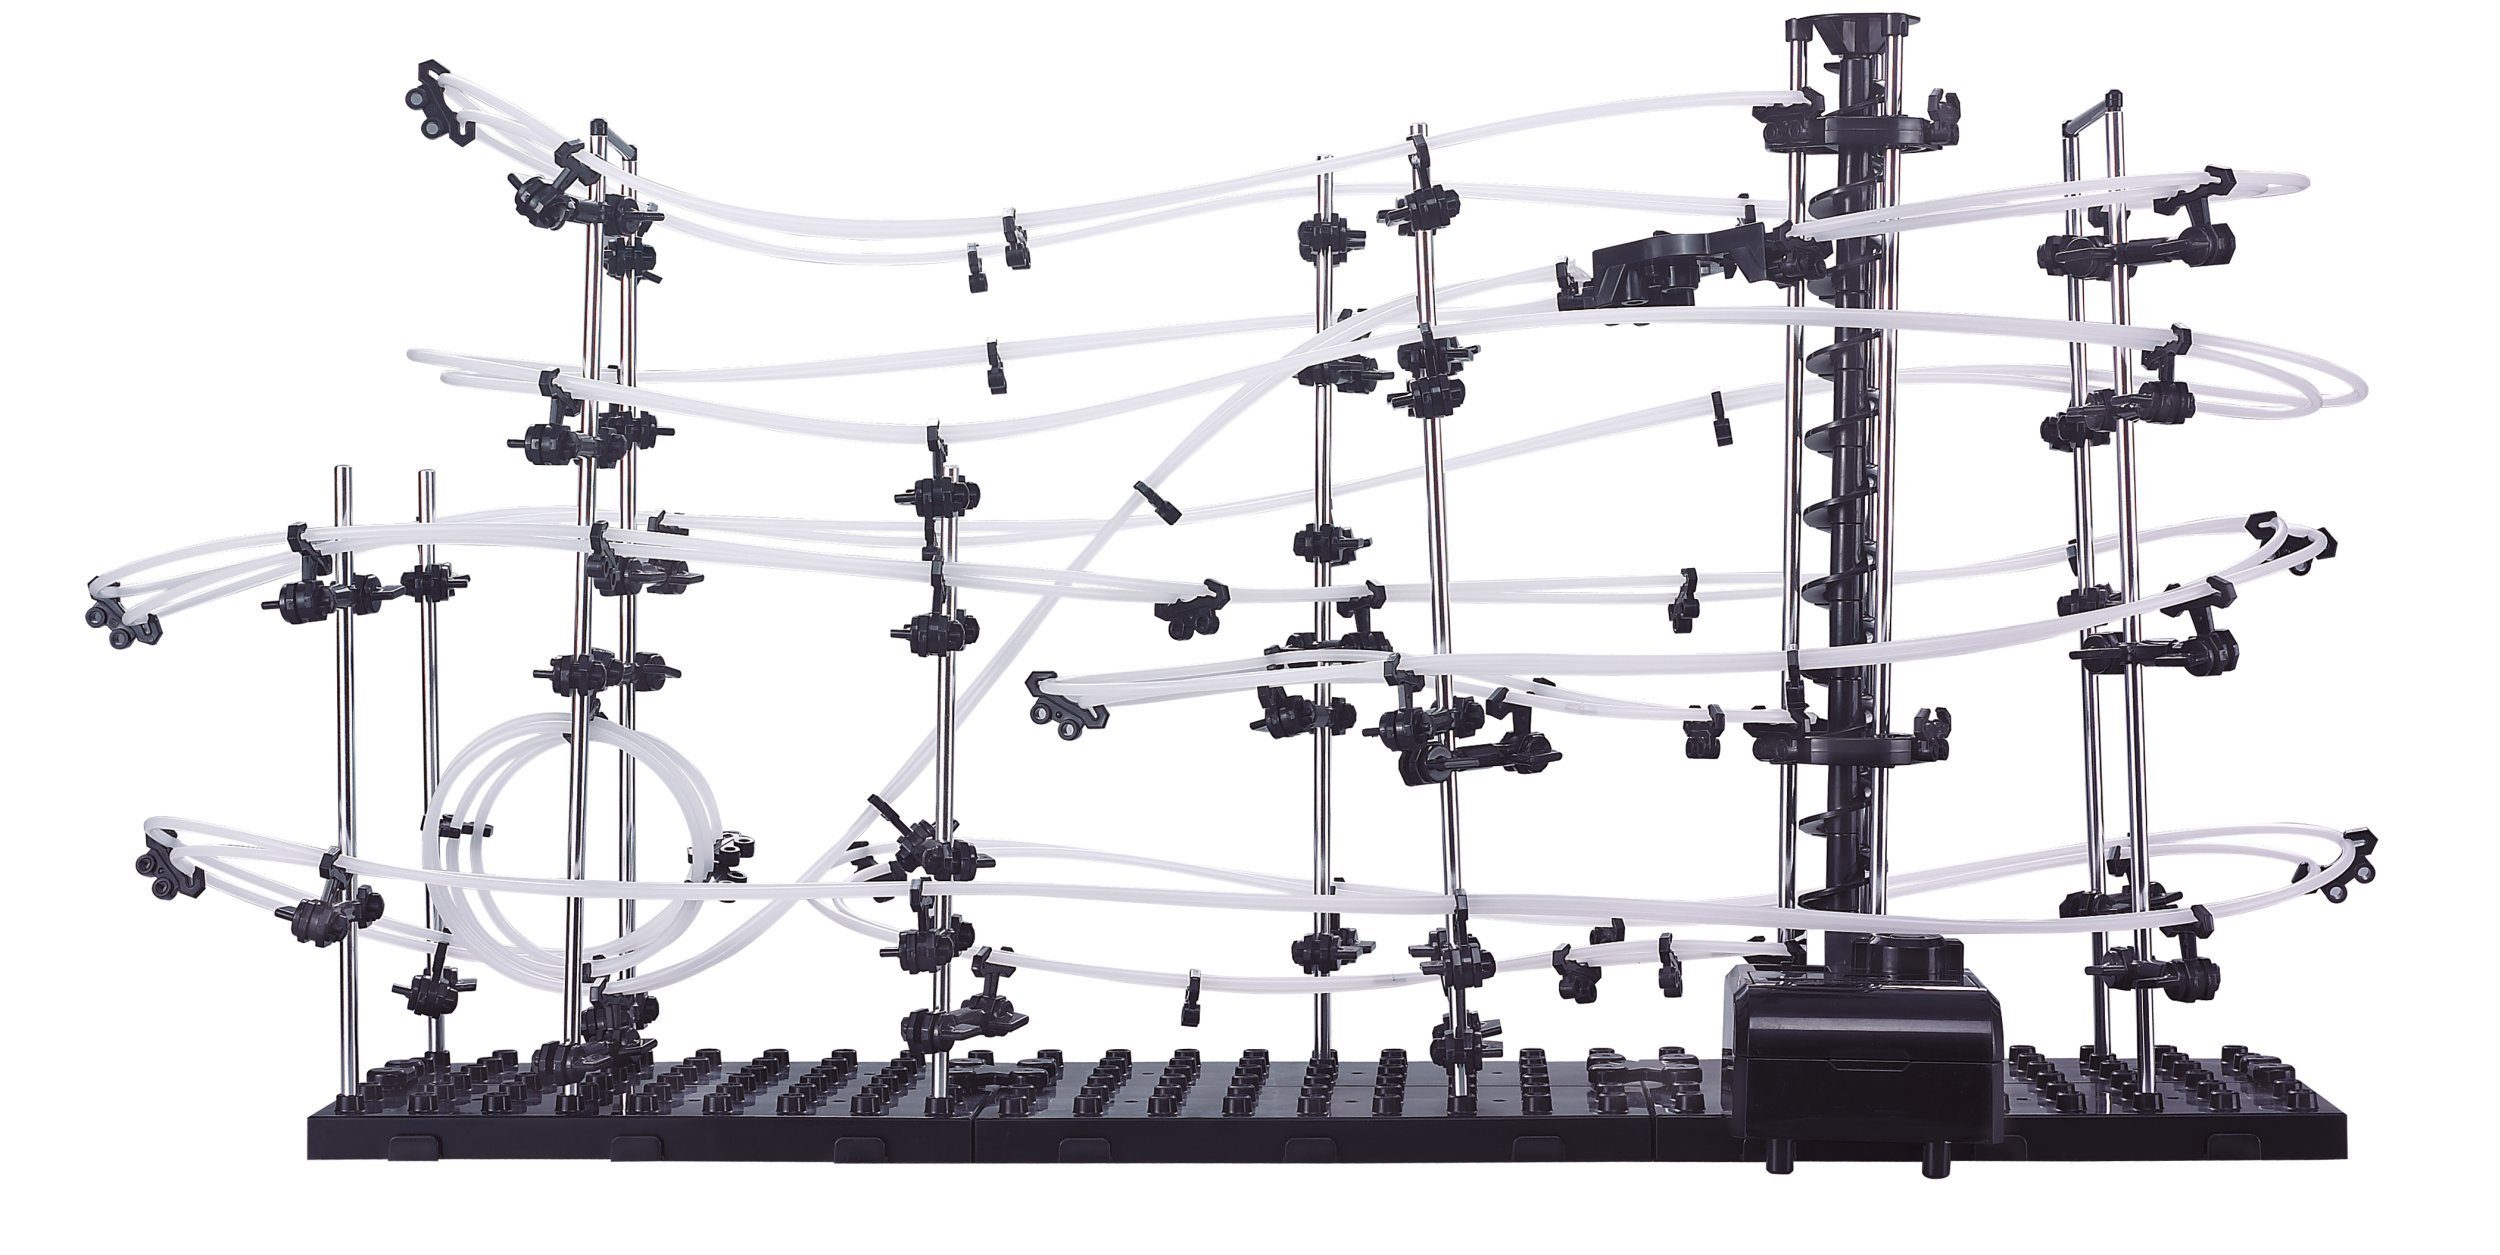 Selva Technik Kugel-Achterbahn Teile, 3D-Puzzle 343 Puzzleteile 3, Coaster Star Level